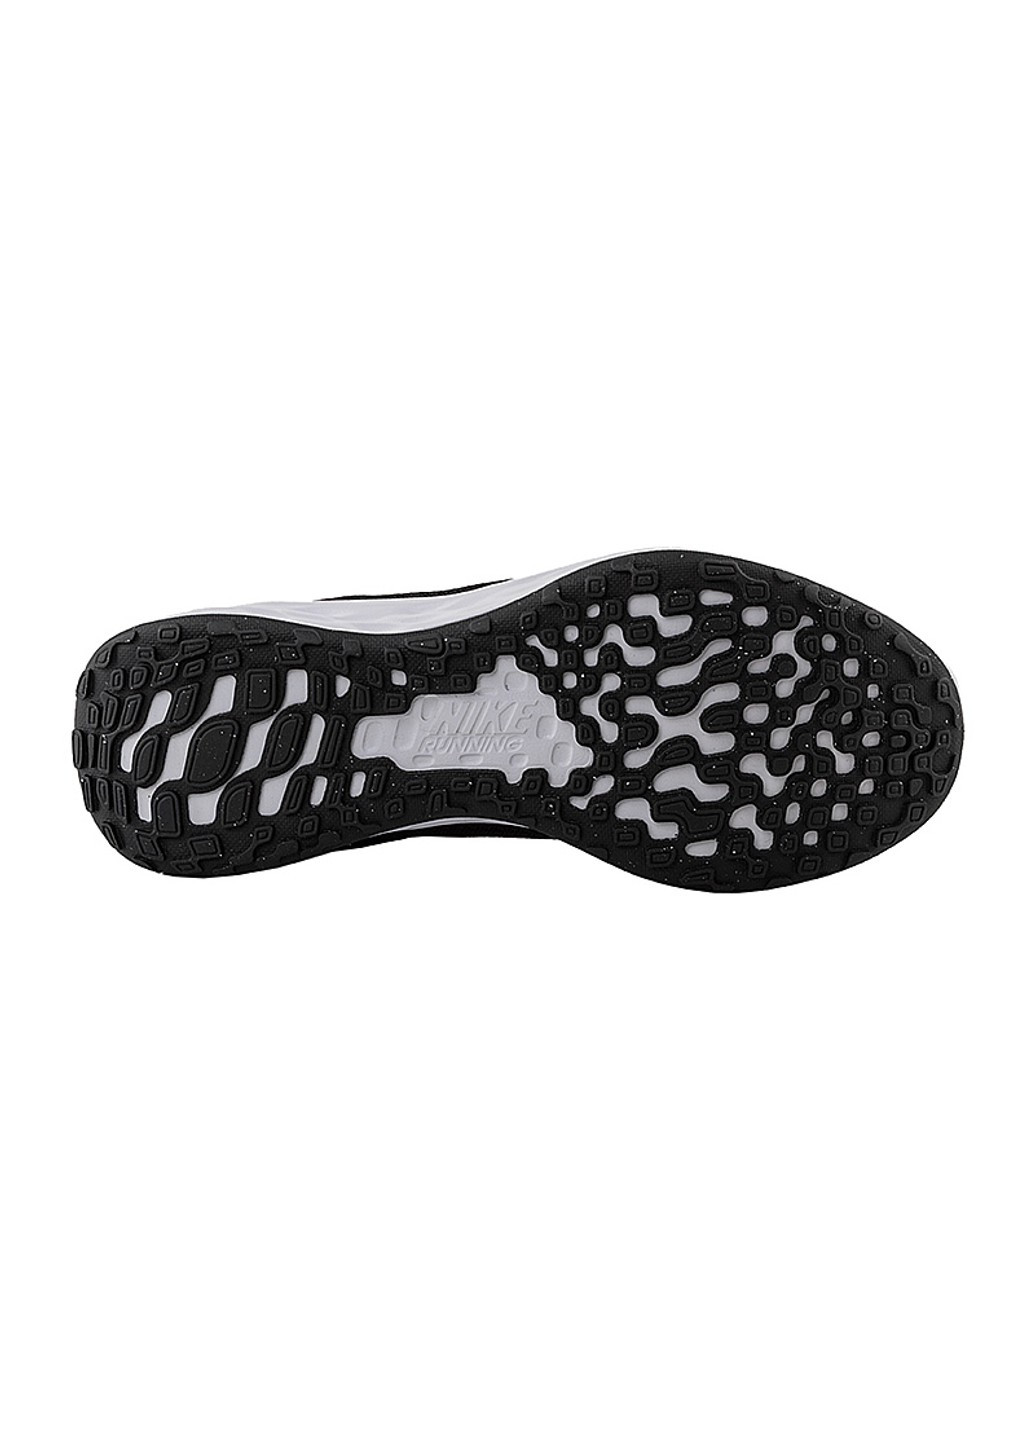 Чорні осінні кросівки w revolution 6 flyease Nike